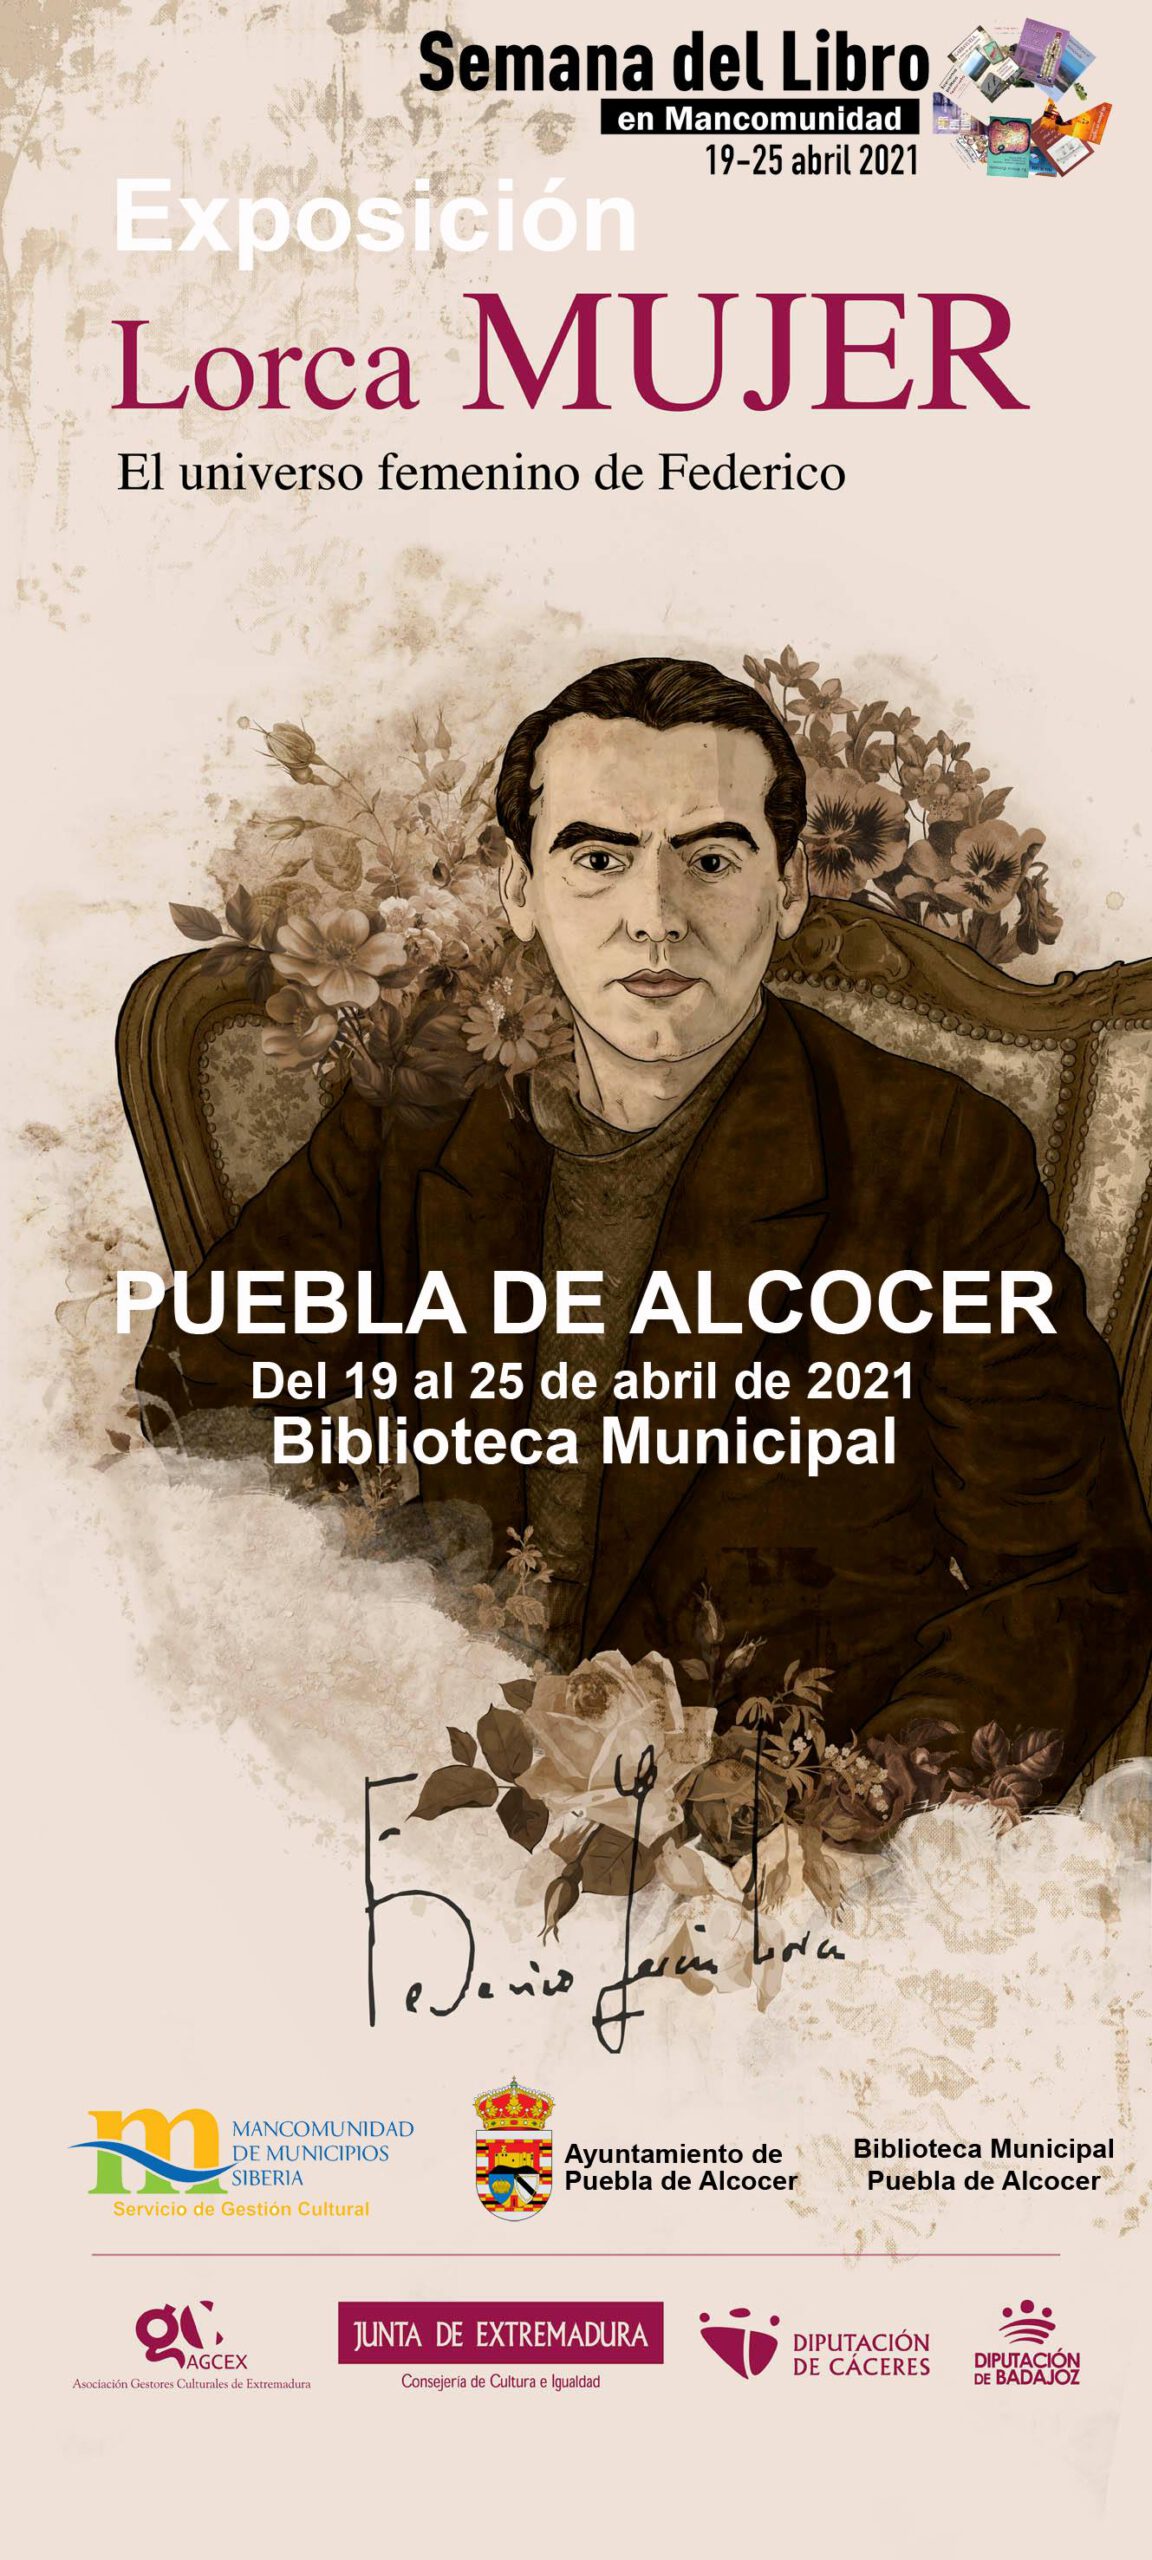 Evento Exposición Lorca MUJER (2021) - Puebla de Alcocer (Badajoz)